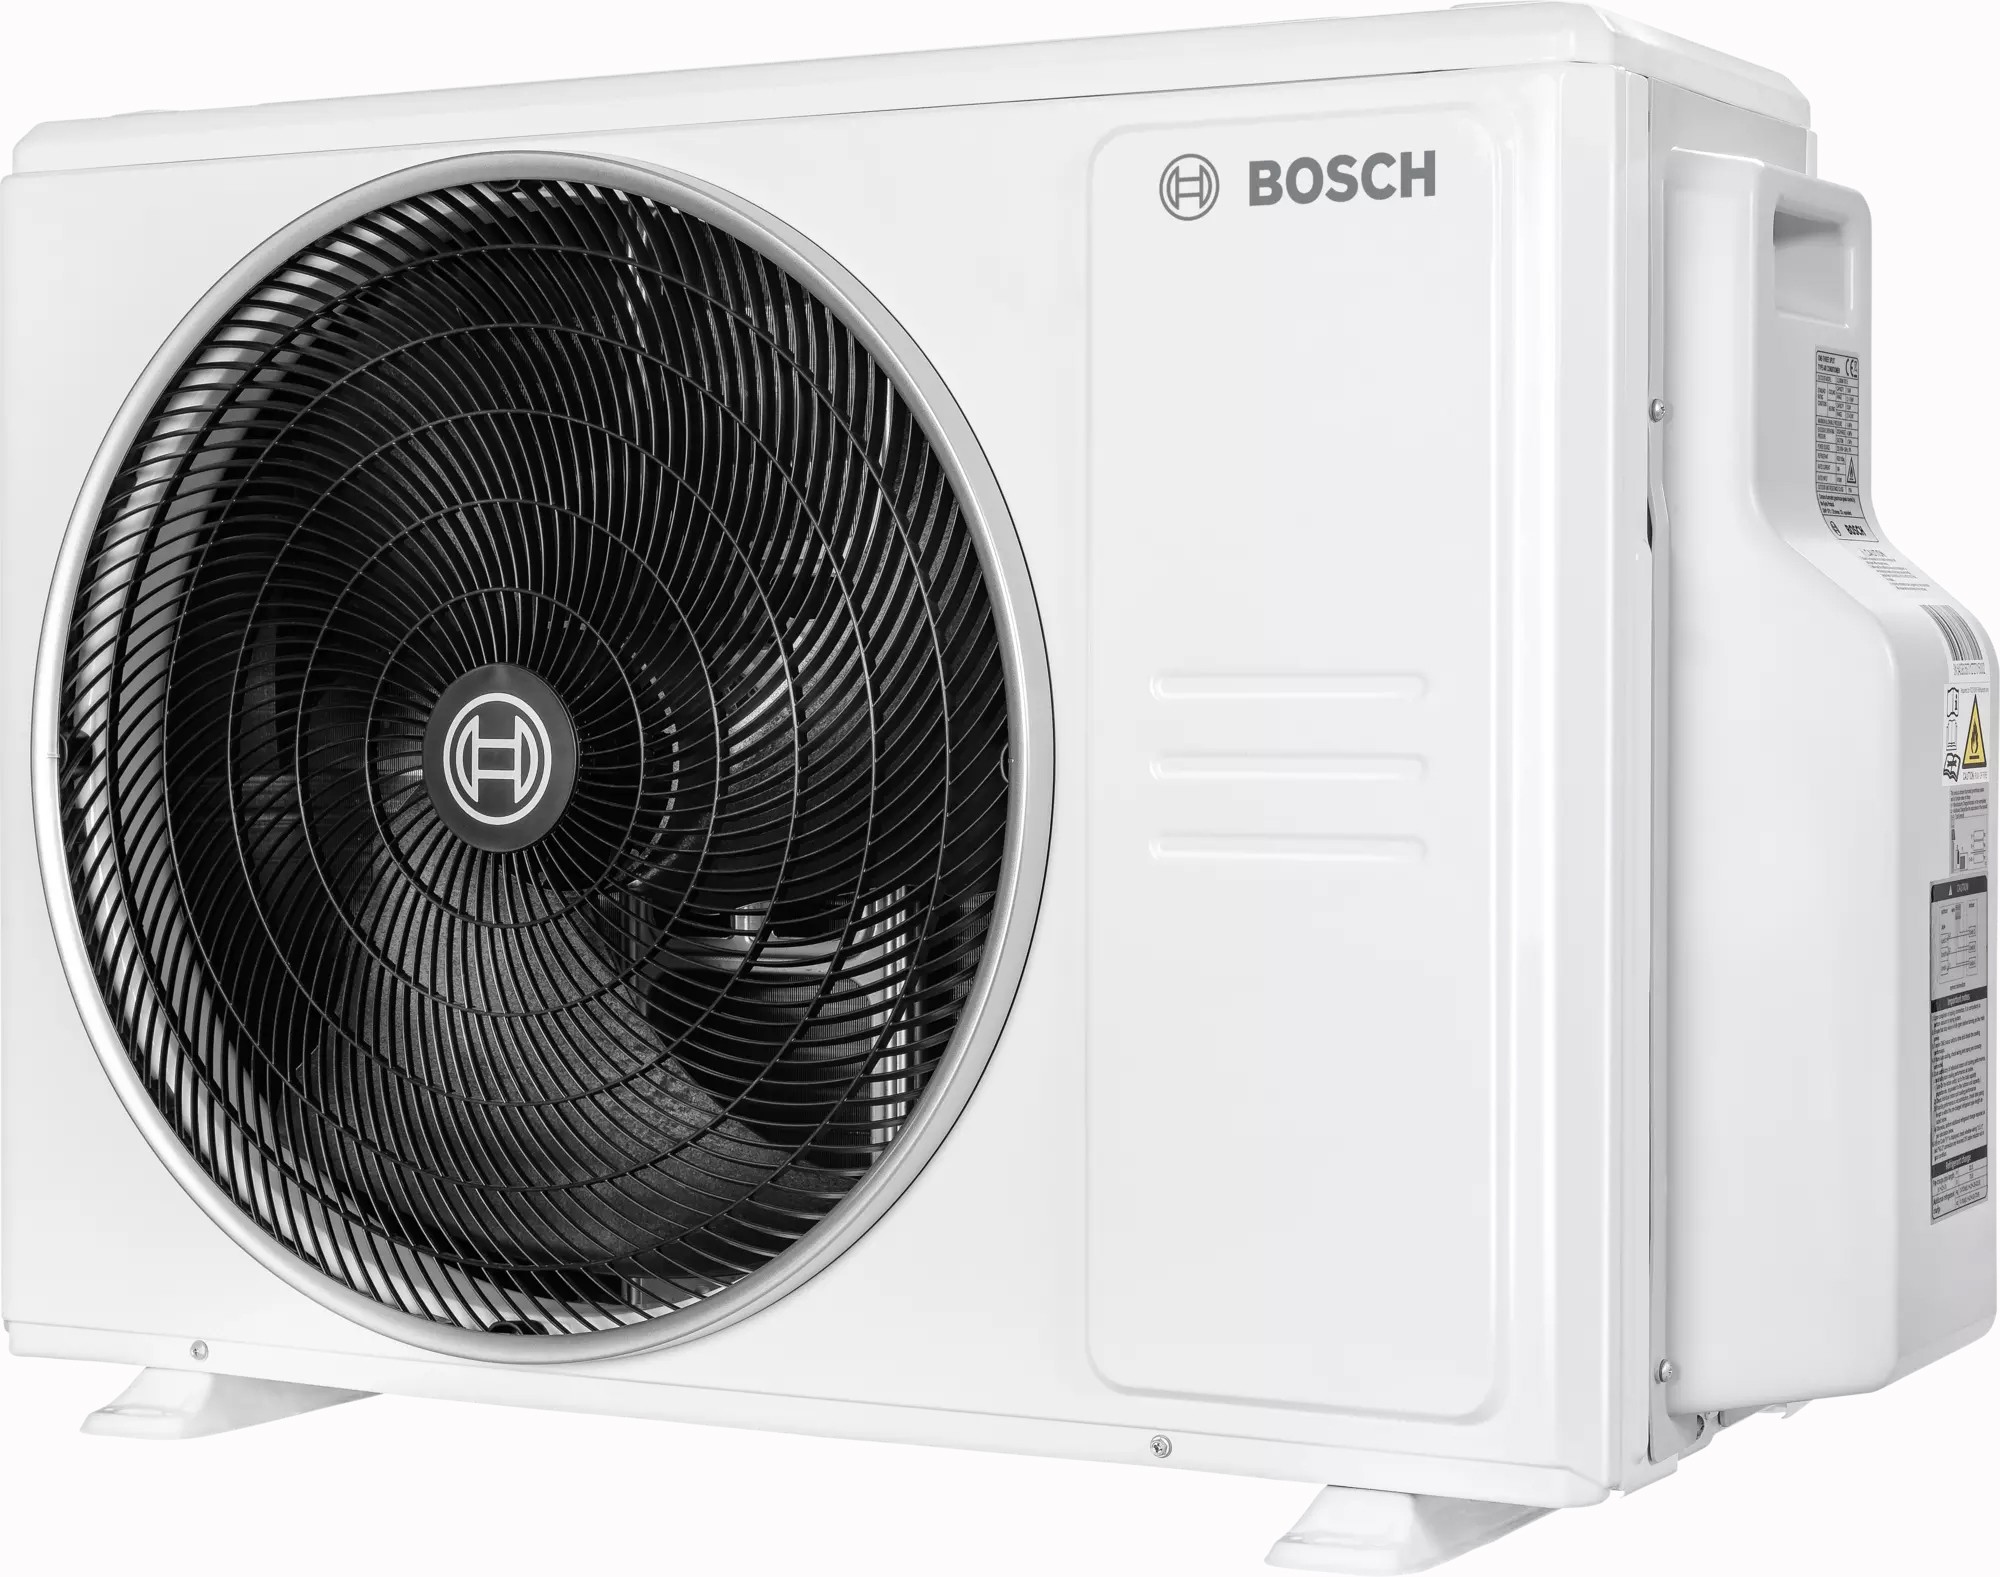 в продаже Наружный блок мультисплит-системы Bosch CL5000M 53/2 E, 5,3 кВт - фото 3